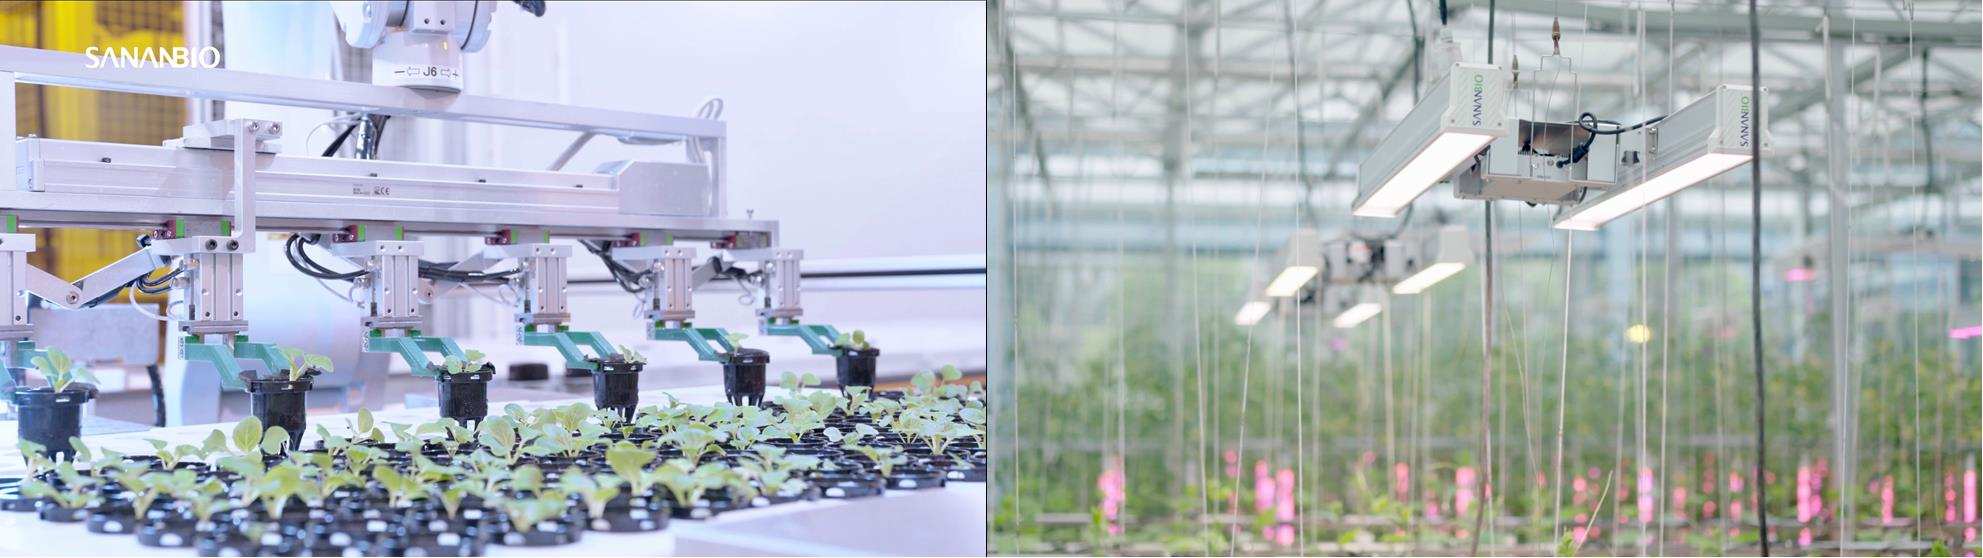 较传统栽培技术产量提升近百倍,「中科三安SANANBIO」为未来农业打造无人化植物工…